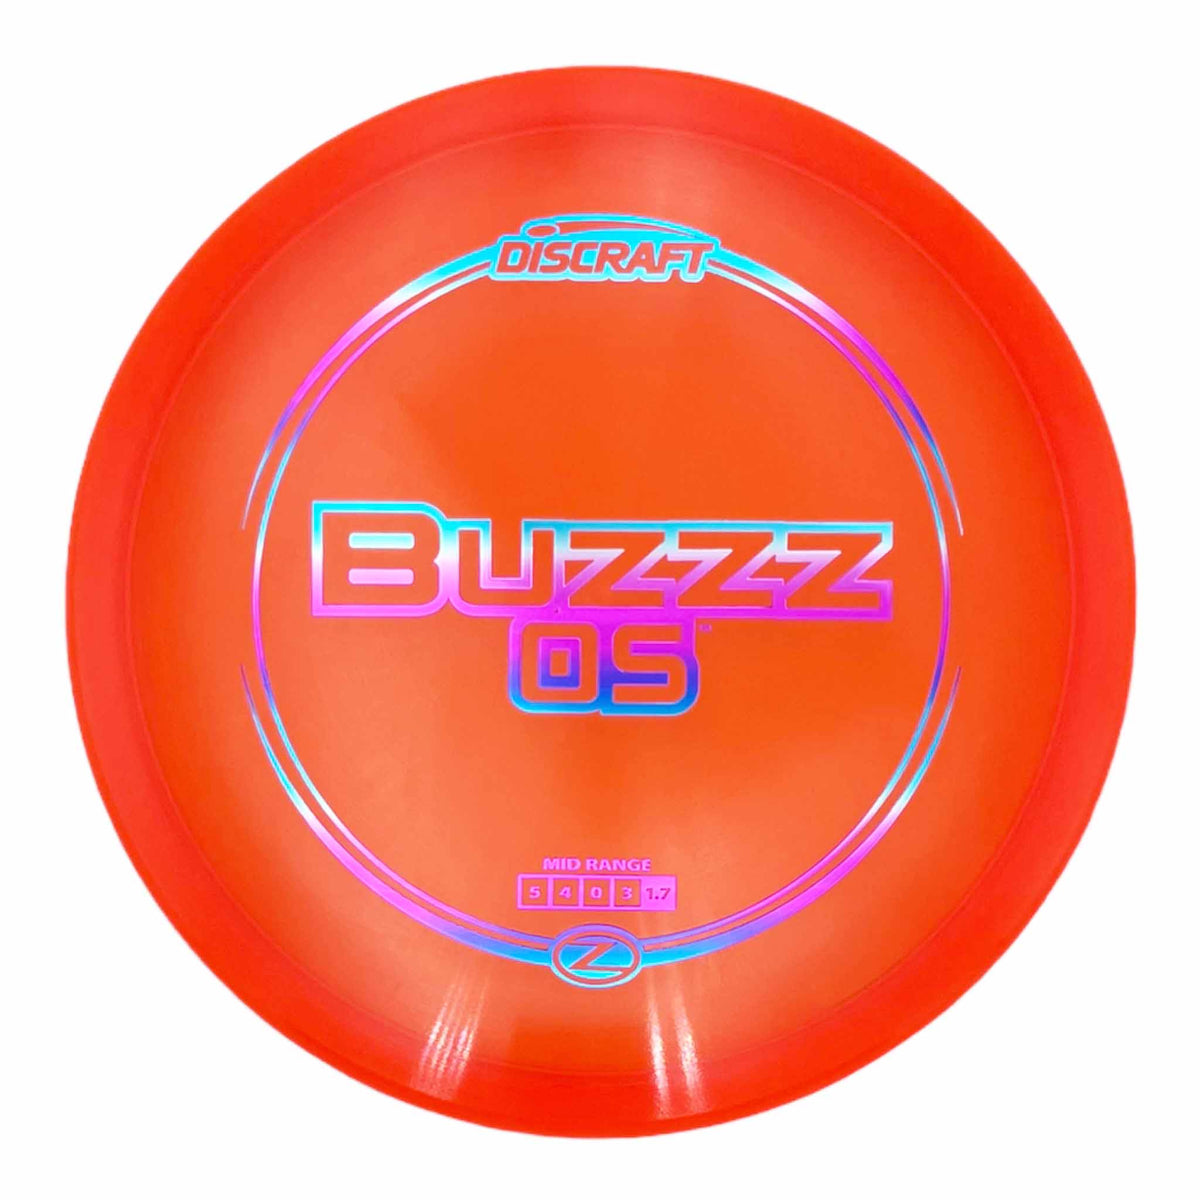 Discraft Z Line Buzzz OS midrange - Orange